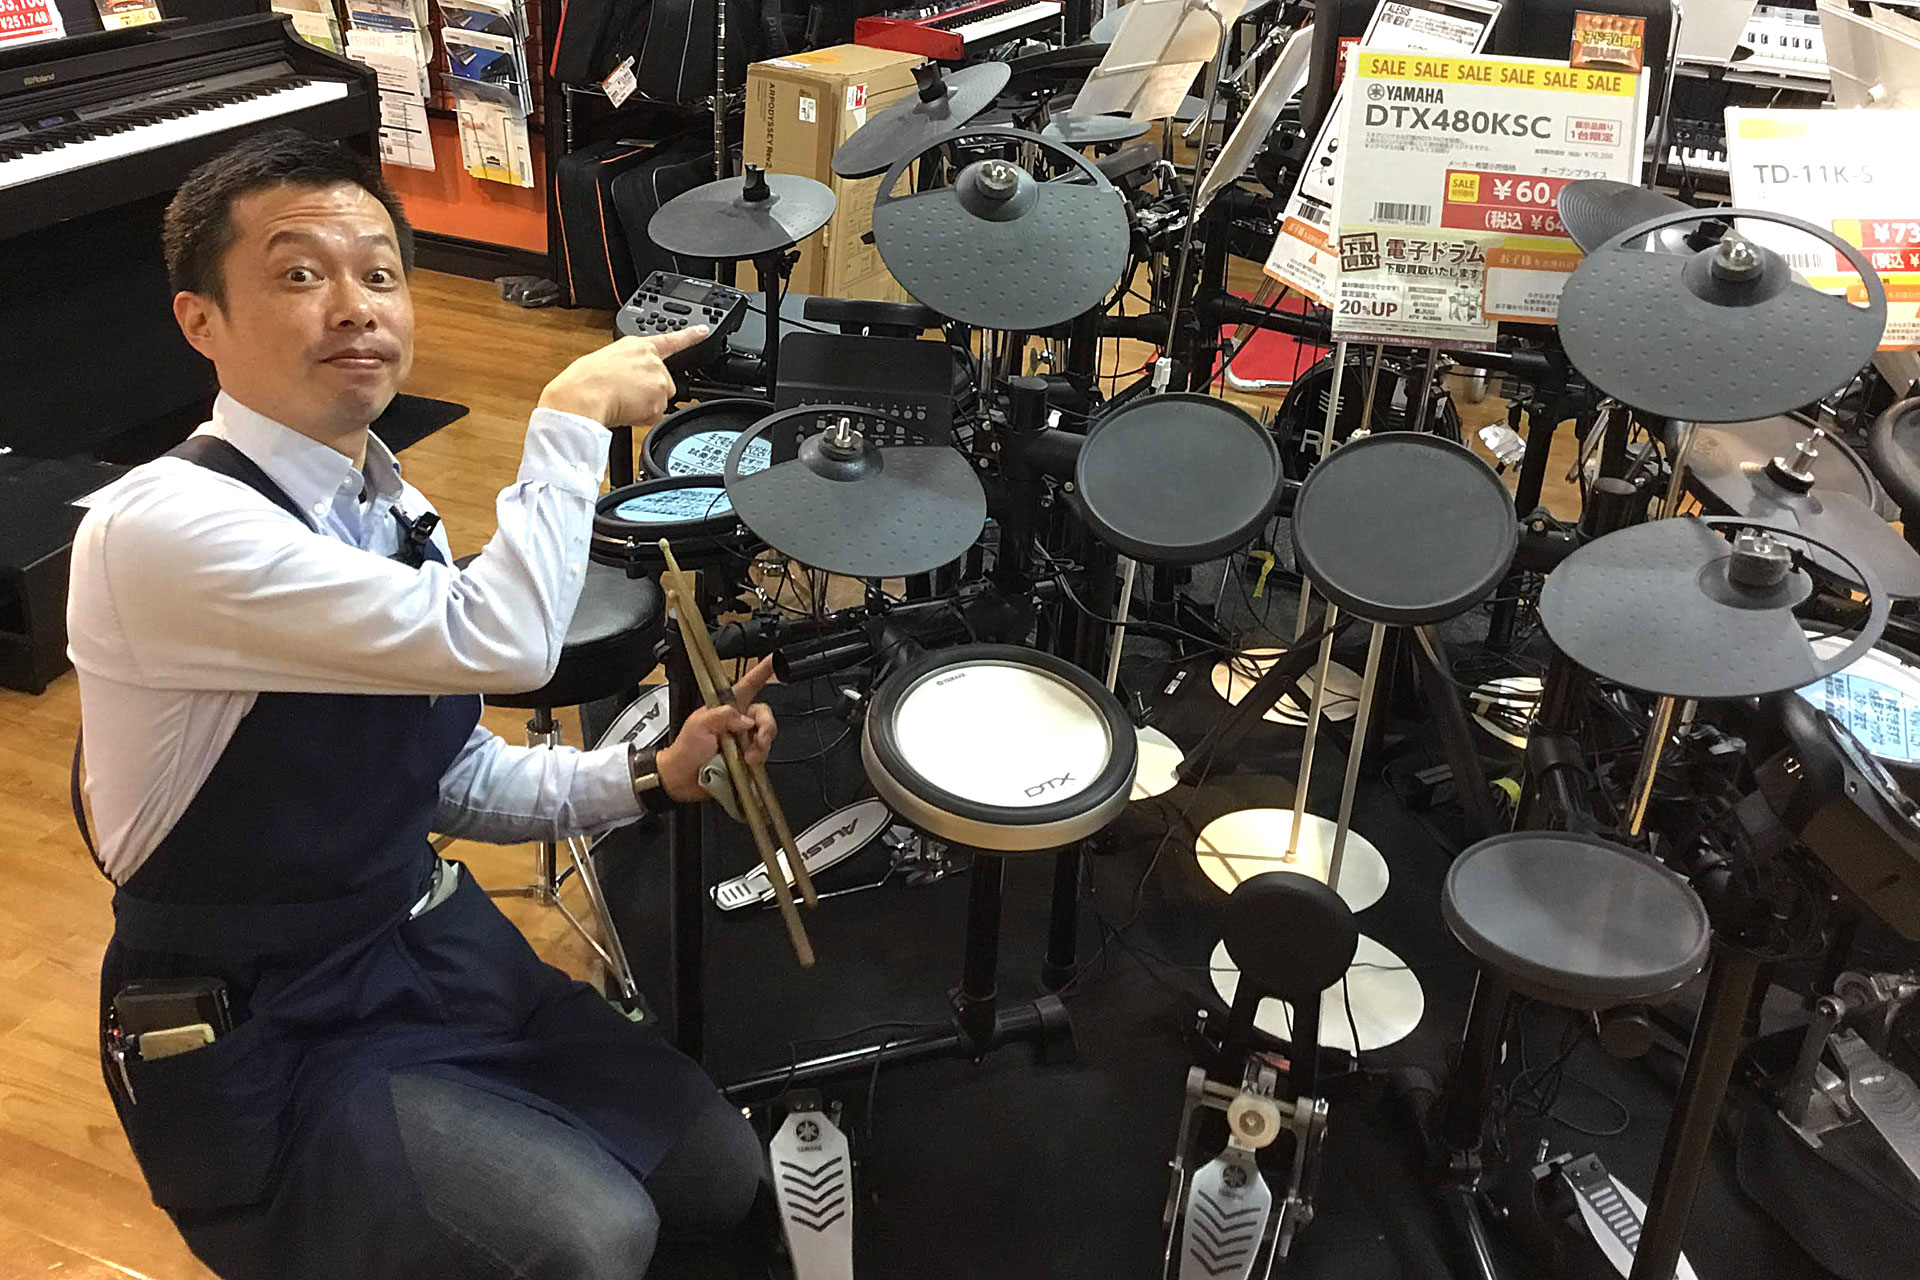 売り切り特価 電子ドラム Yamaha 島村楽器コラボモデル Dtx480ksc 当店 三宮オーパ店 店舗情報 島村楽器